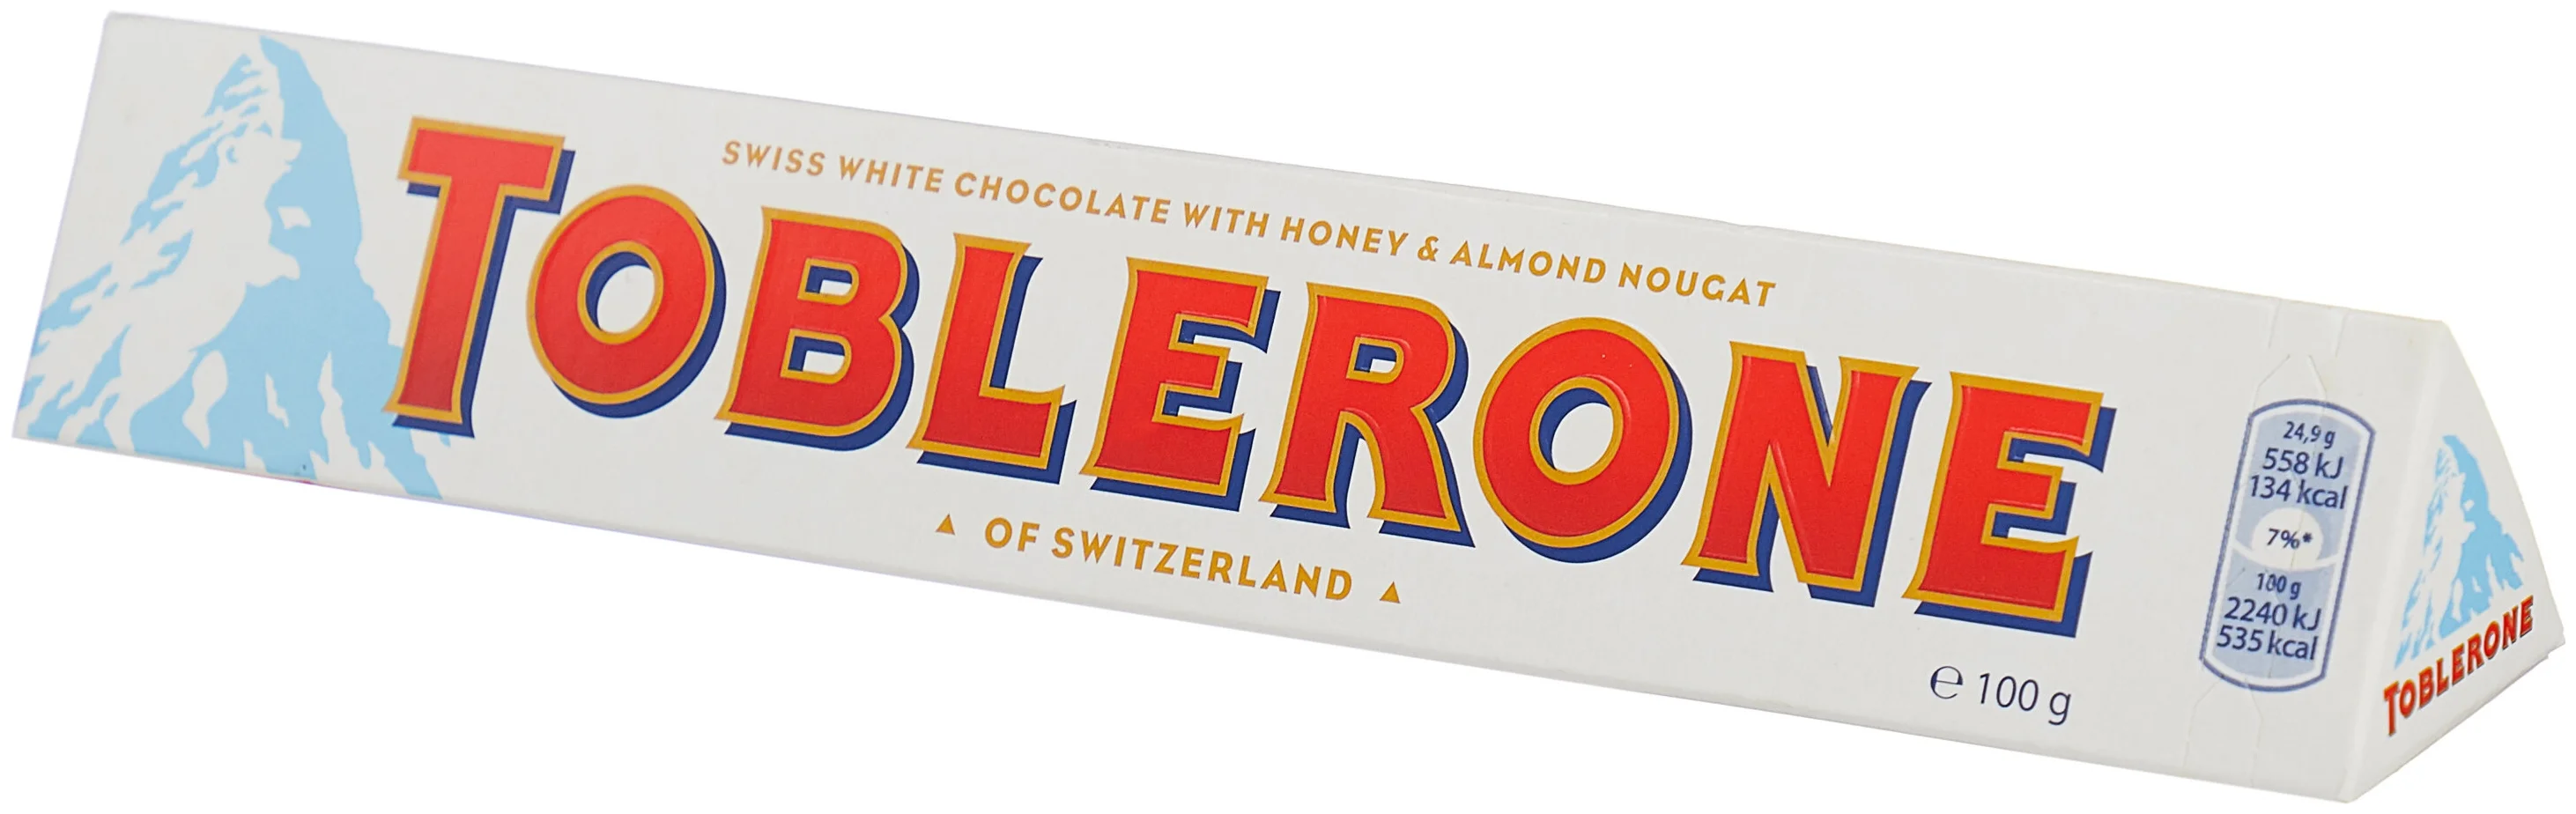 Toblerone "Белый с медово-миндальной нугой" - вид шоколада: белый